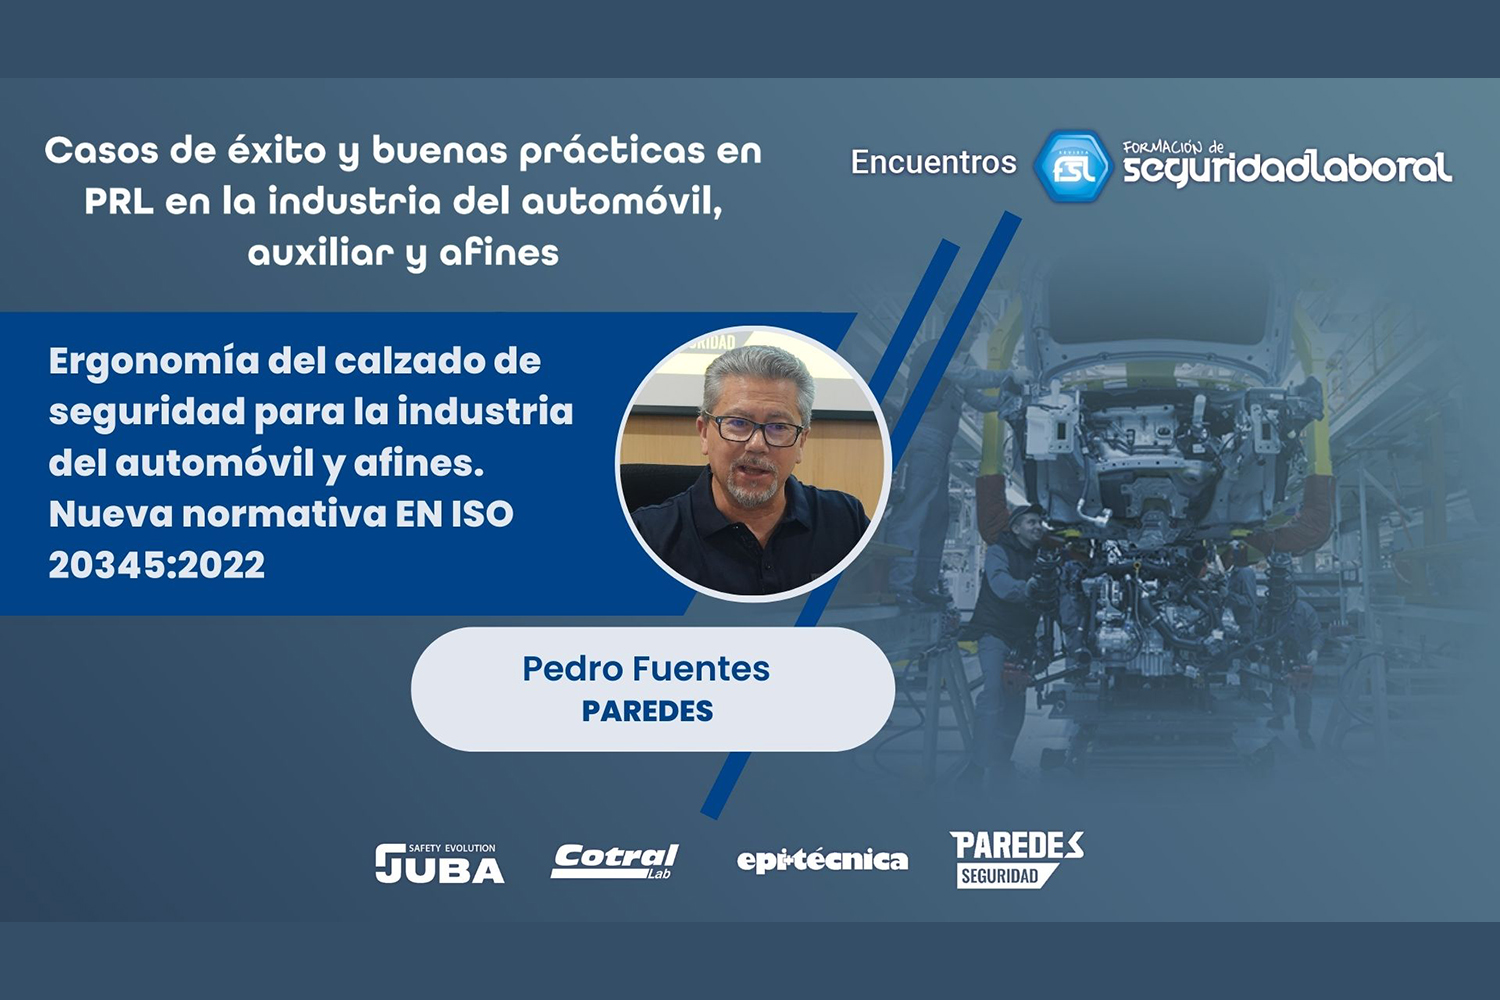 Pedro Fuentes (Paredes): ergonomía del calzado de seguridad para la industria del automóvil y afines. Nueva normativa EN ISO 20345:2022